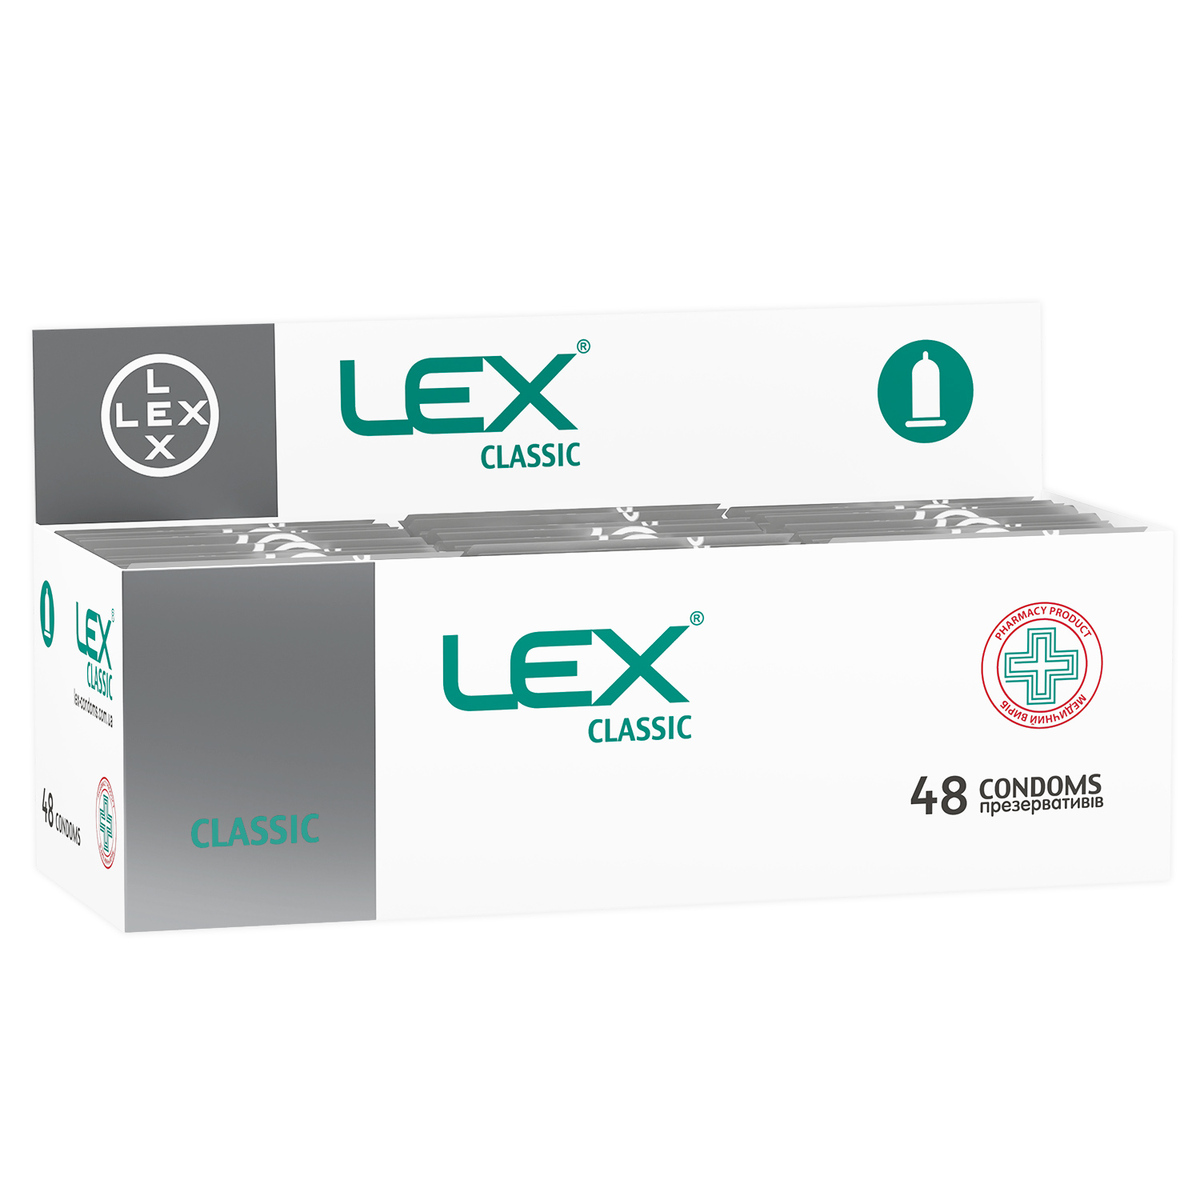 Презервативы Lex Classic классические, 48 шт. (LEX/Classic/48) - фото 1